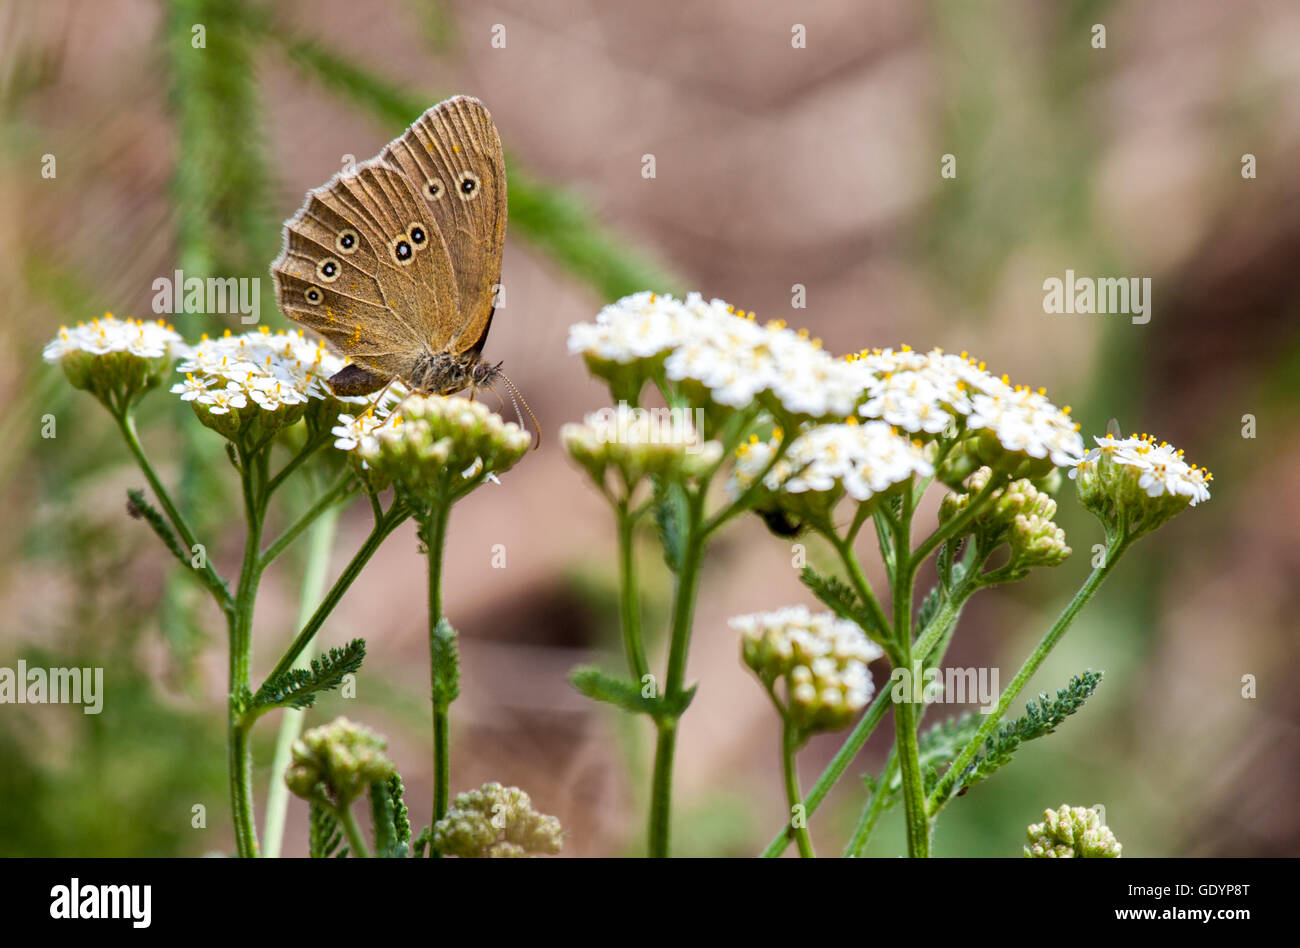 Aphantopus hyperantus, brown forest bird butterfly Stock Photo